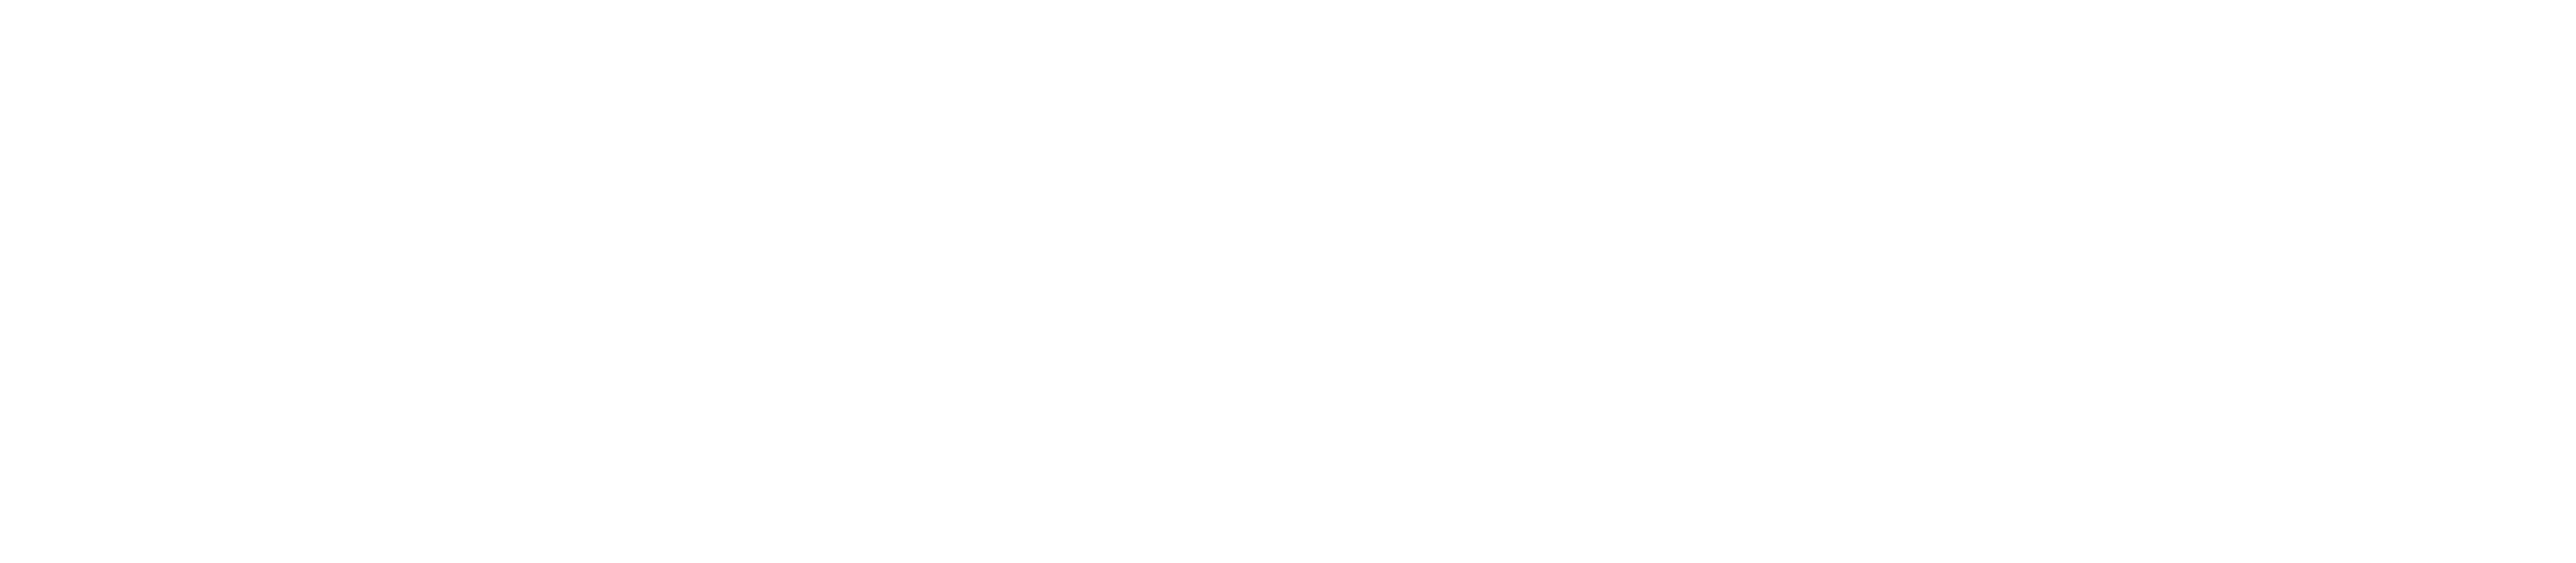 Morpol